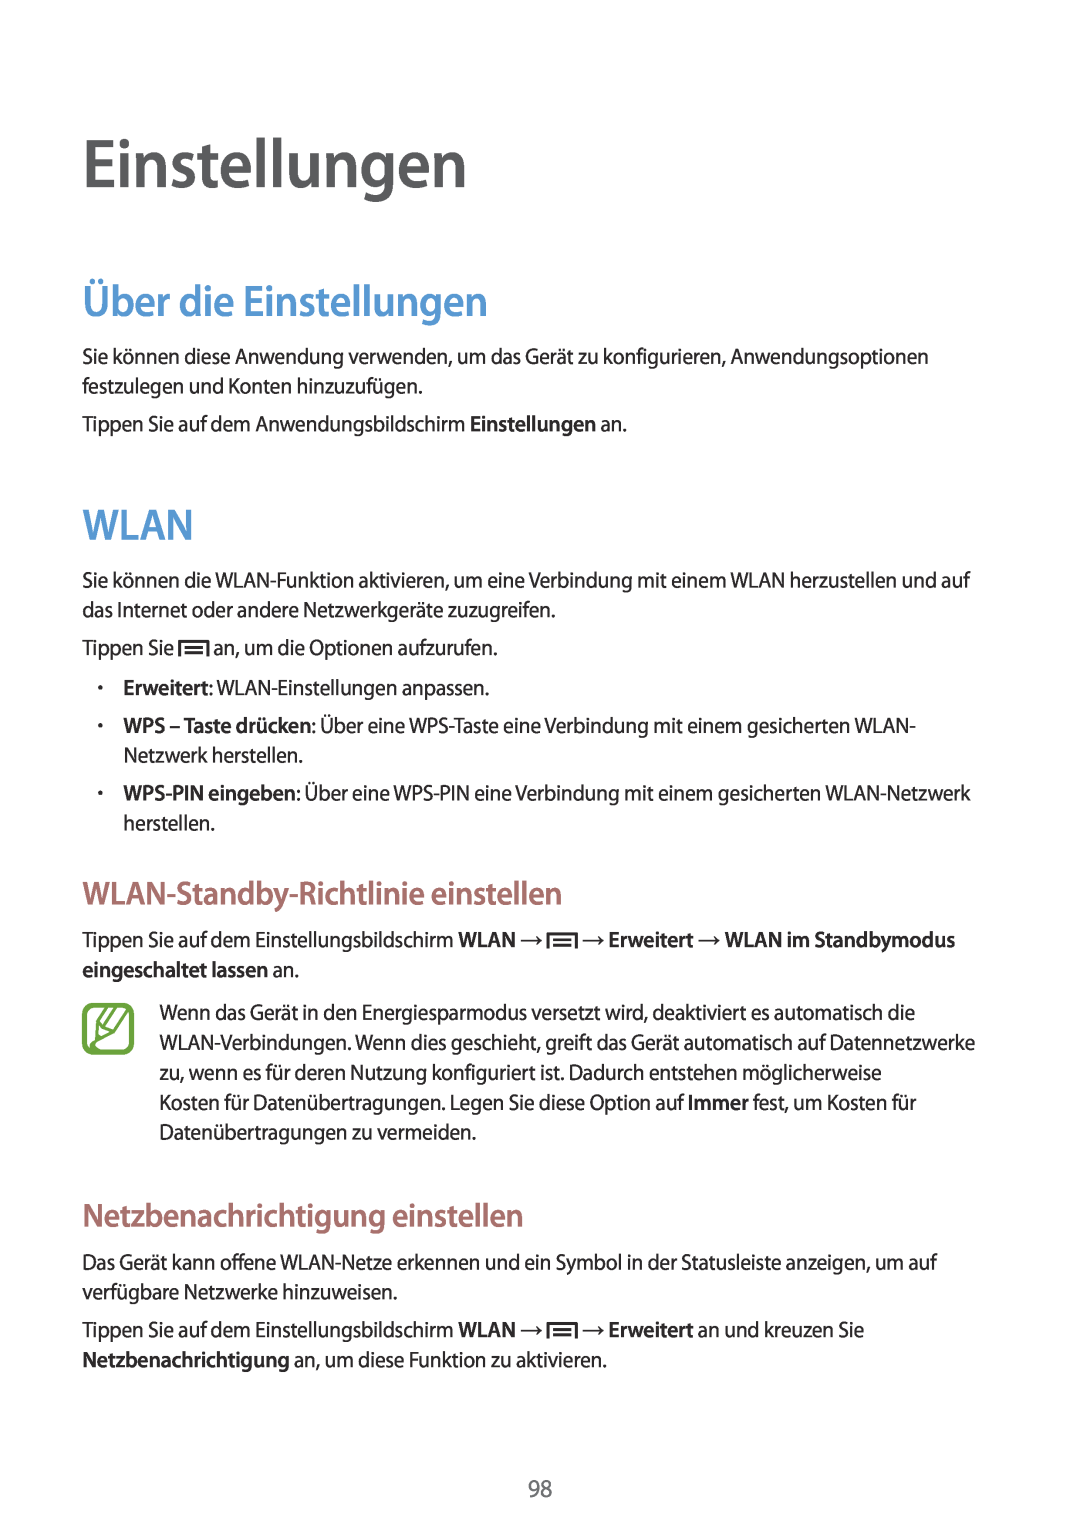 Samsung GT-I8190RWNDTM manual Über die Einstellungen, Wlan, WLAN-Standby-Richtlinie einstellen, eingeschaltet lassen an 